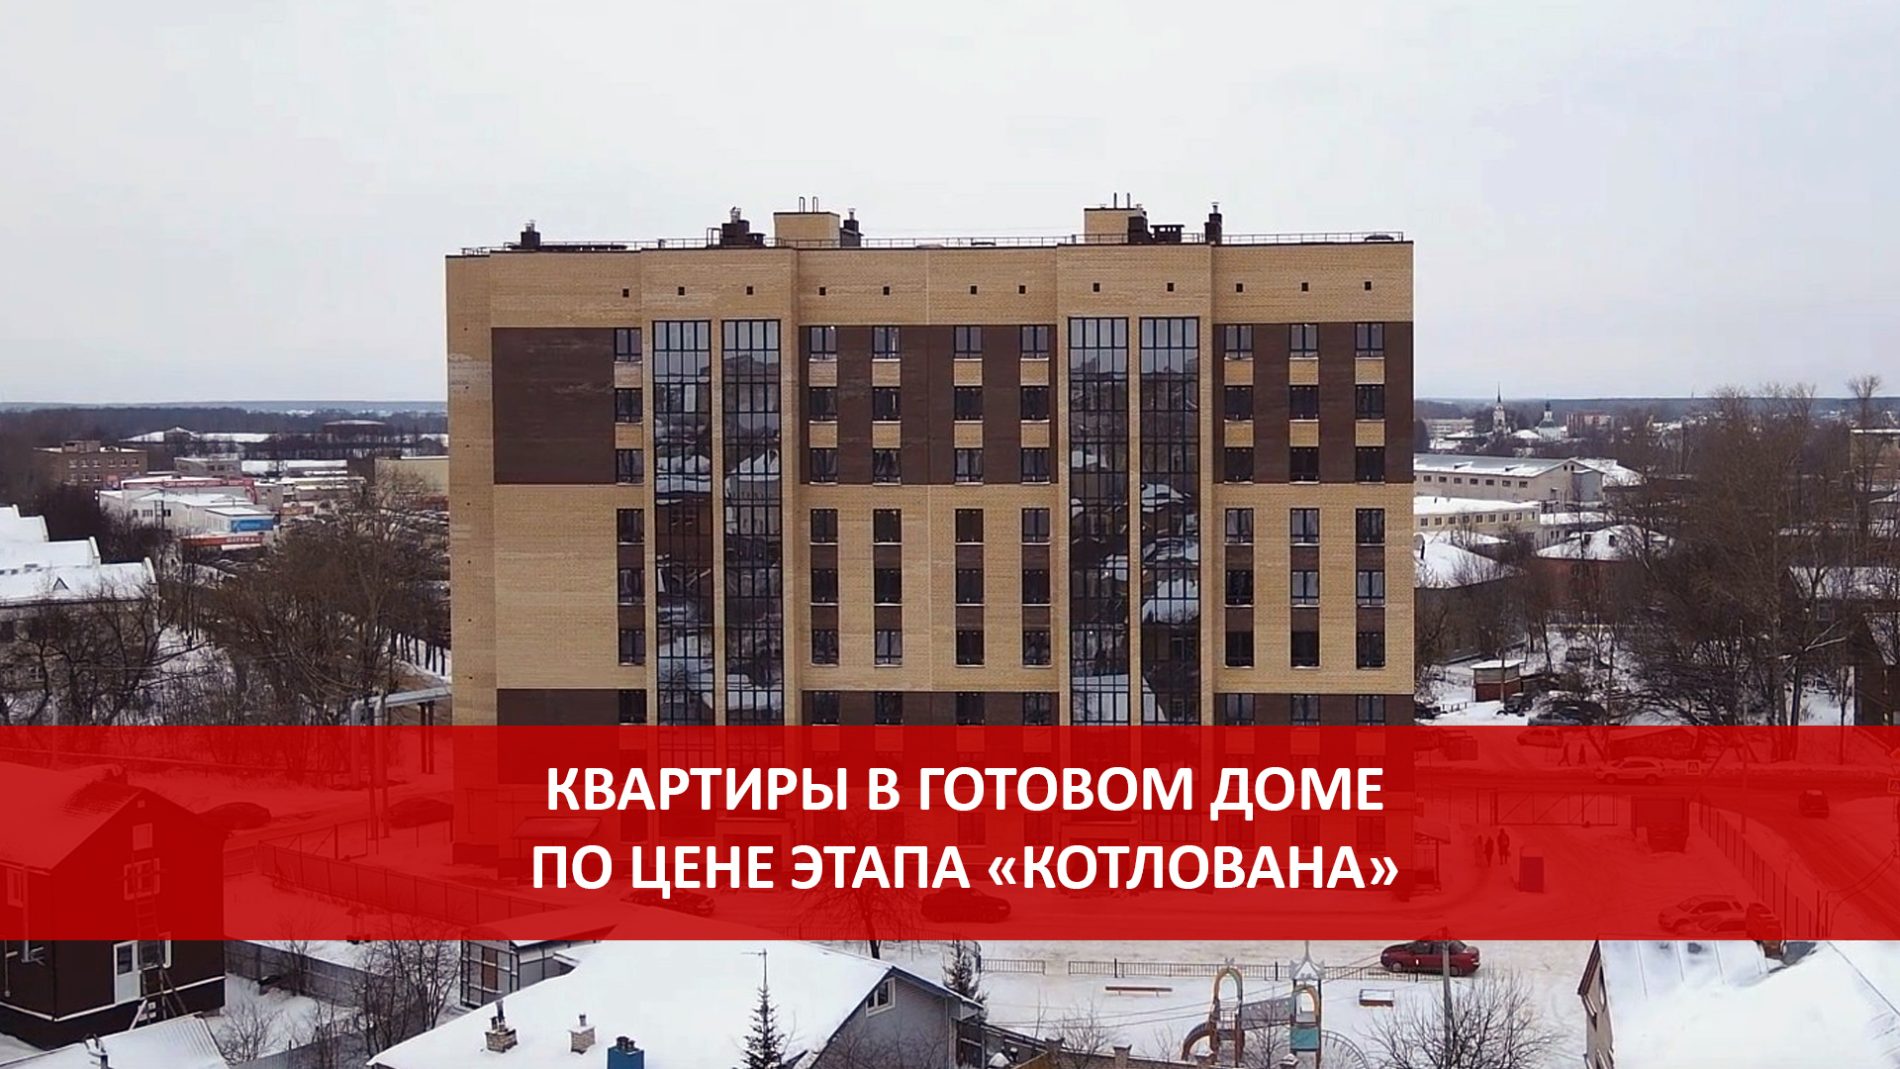 Квартиры в готовом доме по цене этапа “котлована” продают в Костроме